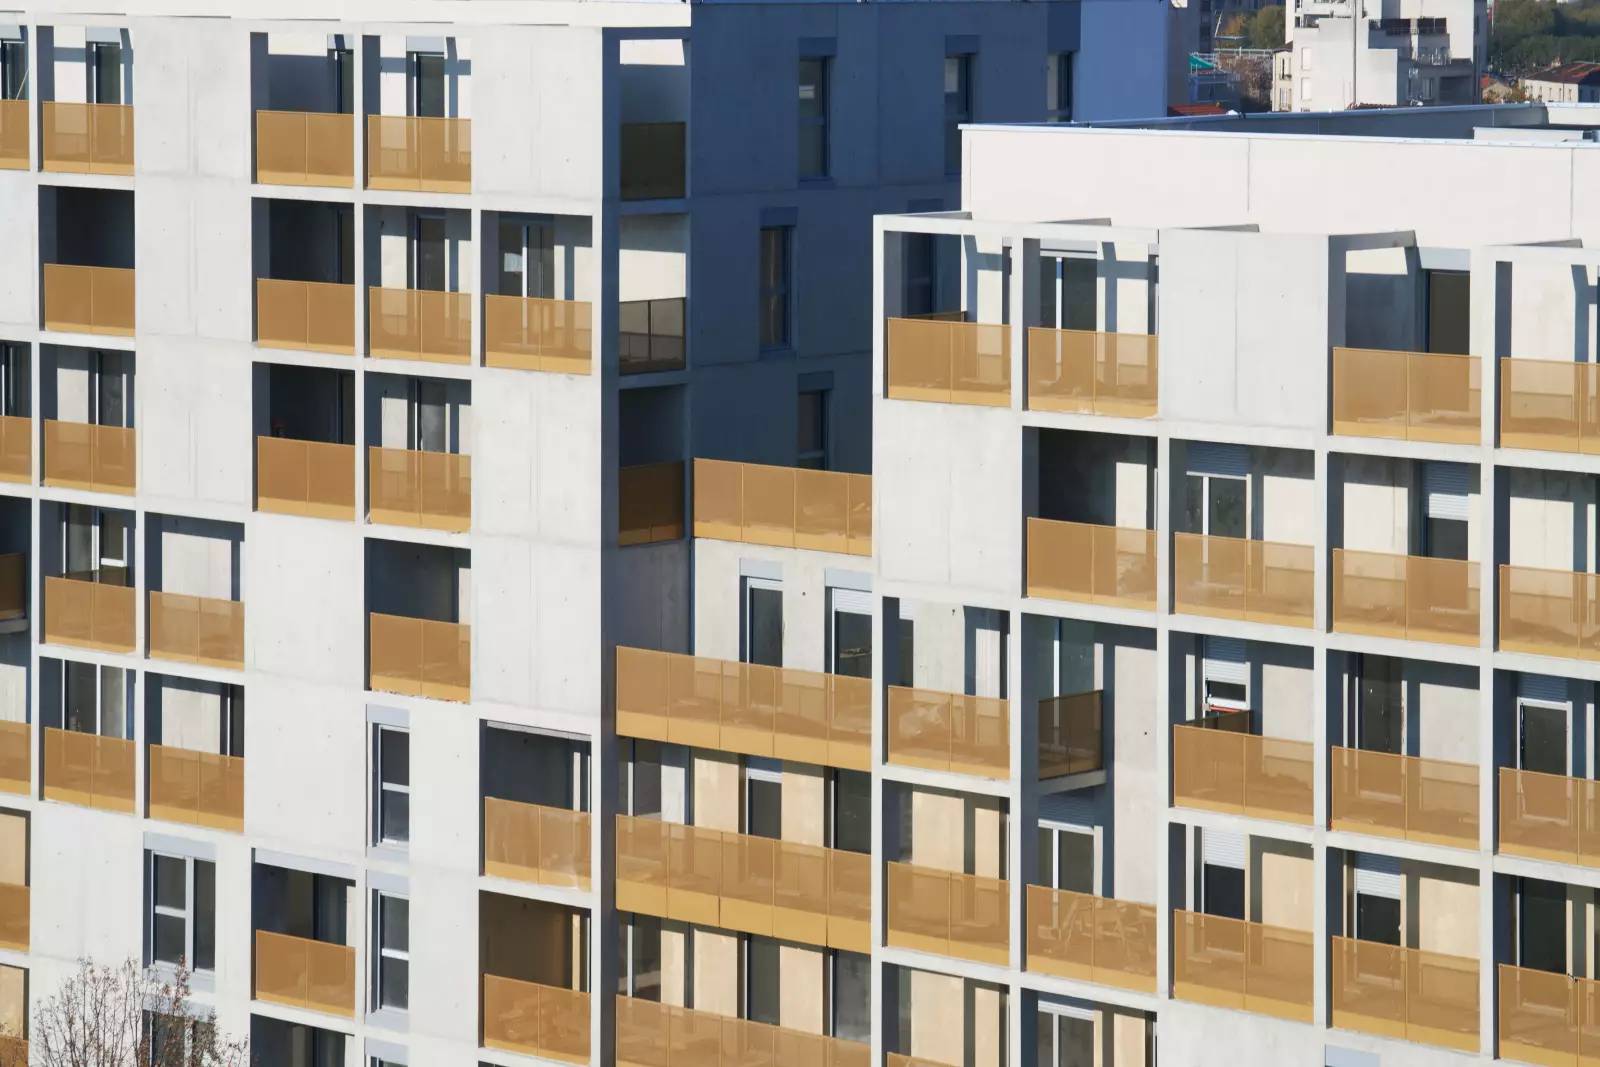 IVRY-SUR-SEINE - ZAC Confluences - 100 logements